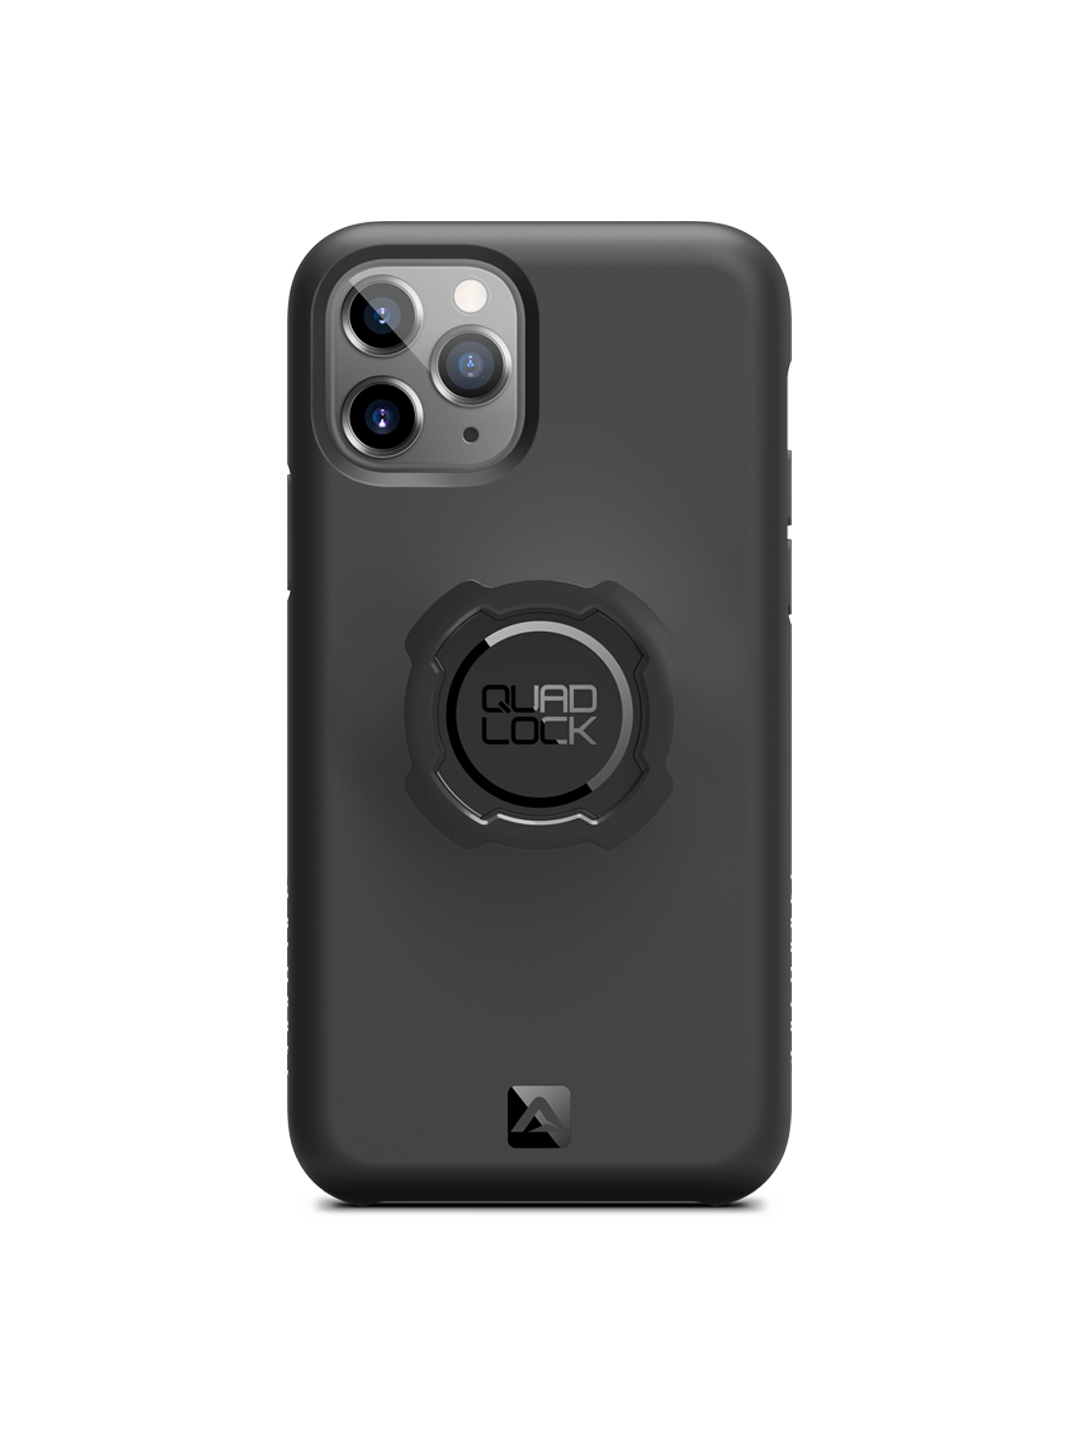 quad lock case iphone 11